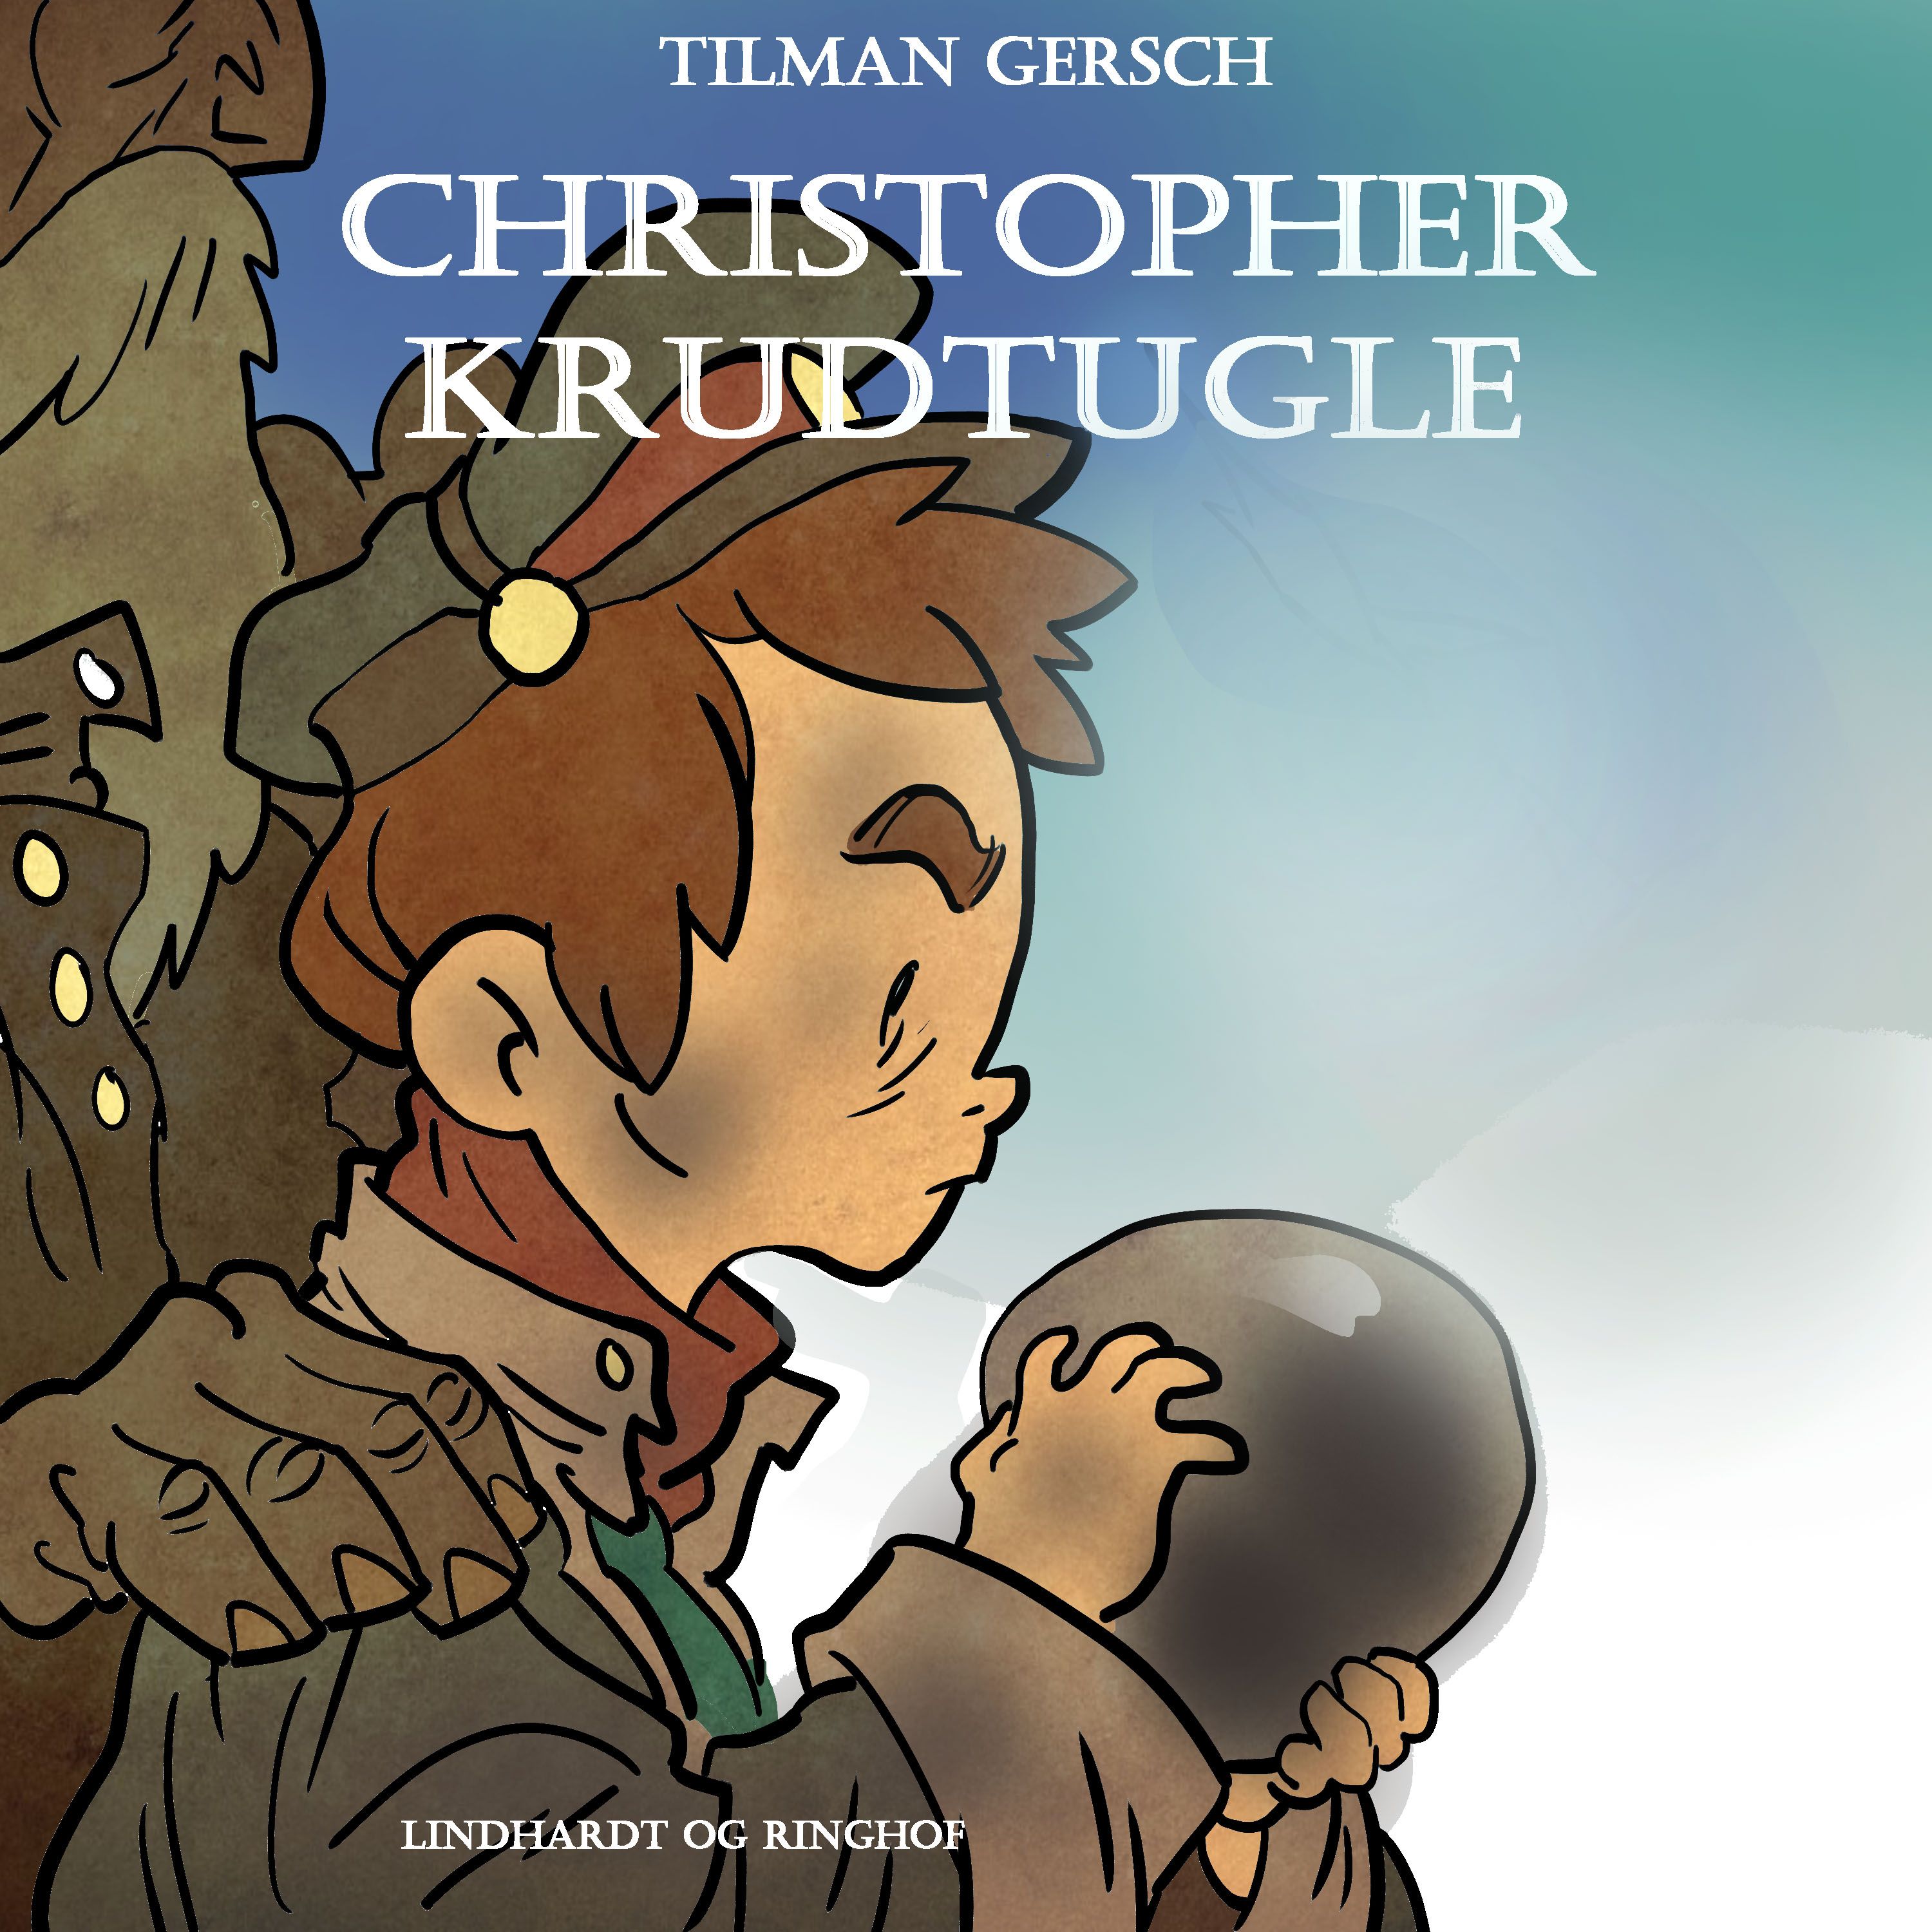 Christopher Krudtugle, lydbog af Tilman Gersch